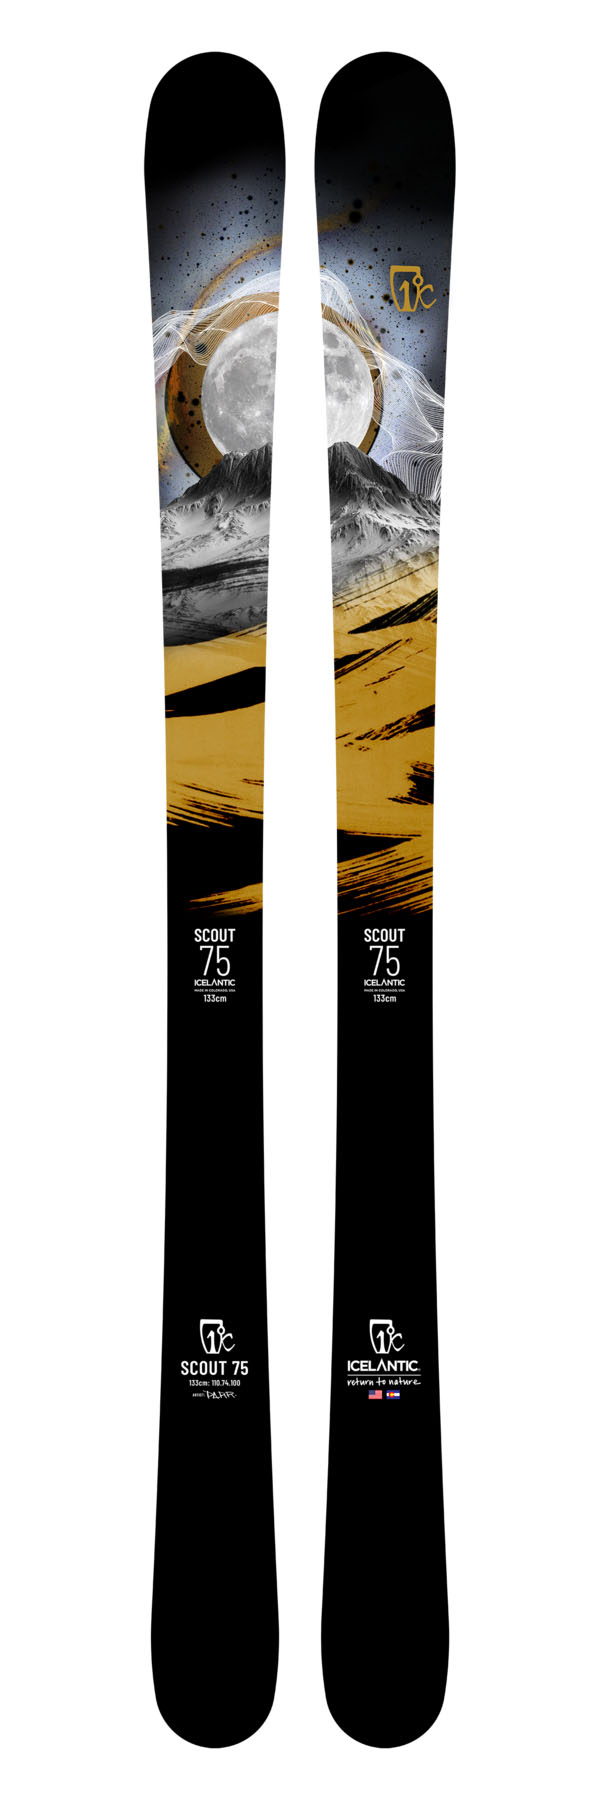 Лыжи для подготовленного склона Icelantic Scout 75 2021/2022